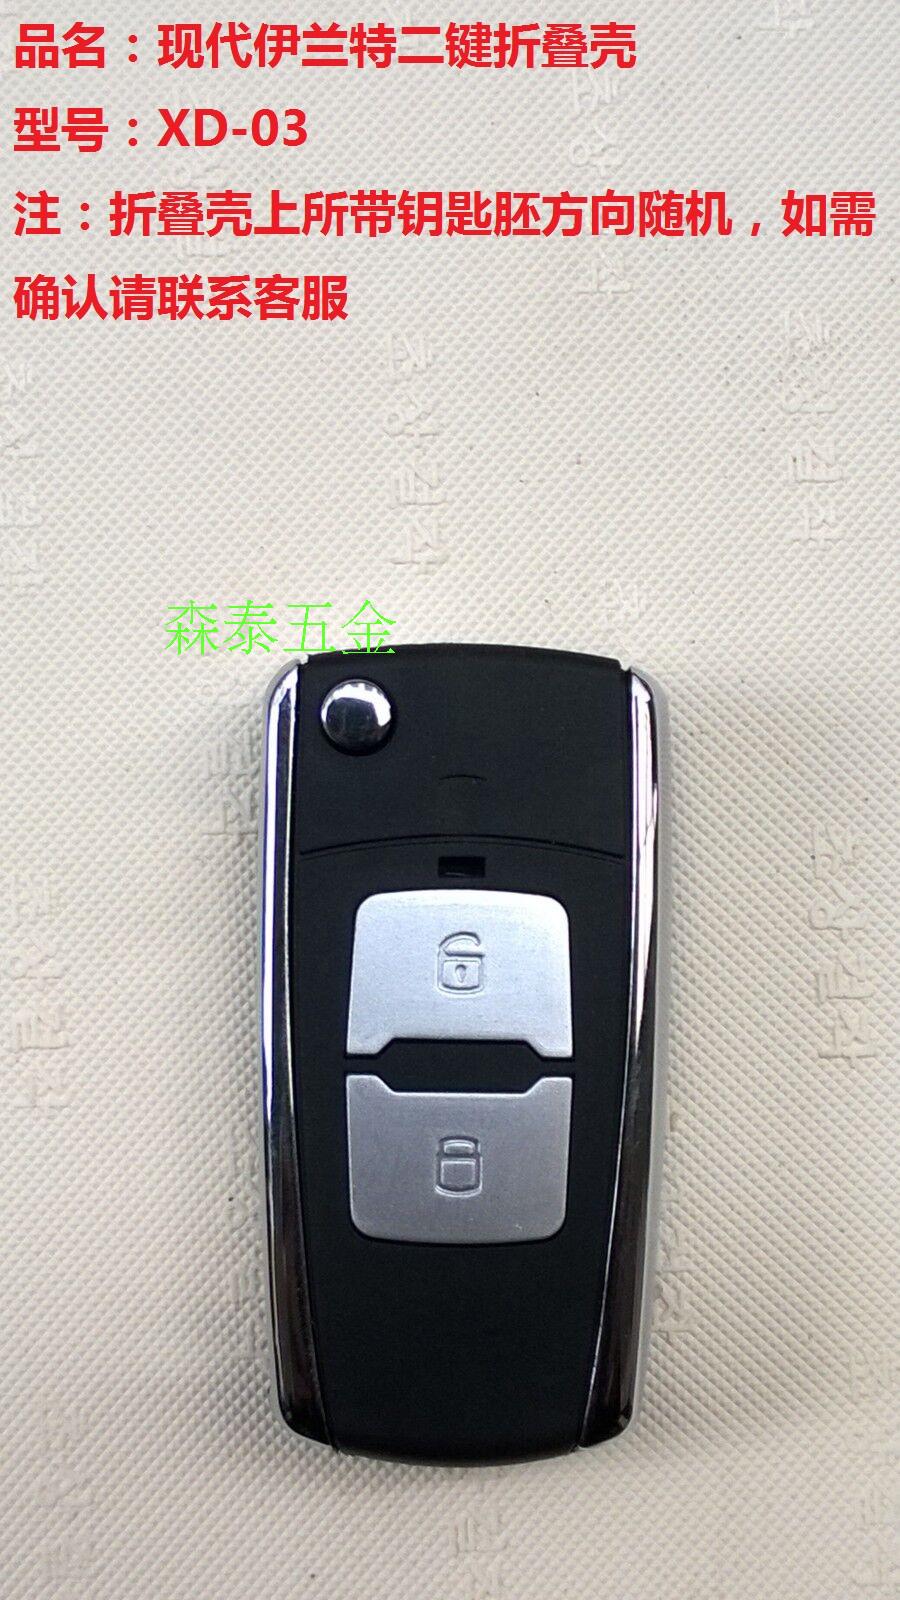 北京现代老款悦动伊兰特汽车钥匙改装起亚福瑞迪狮跑折叠遥控外壳